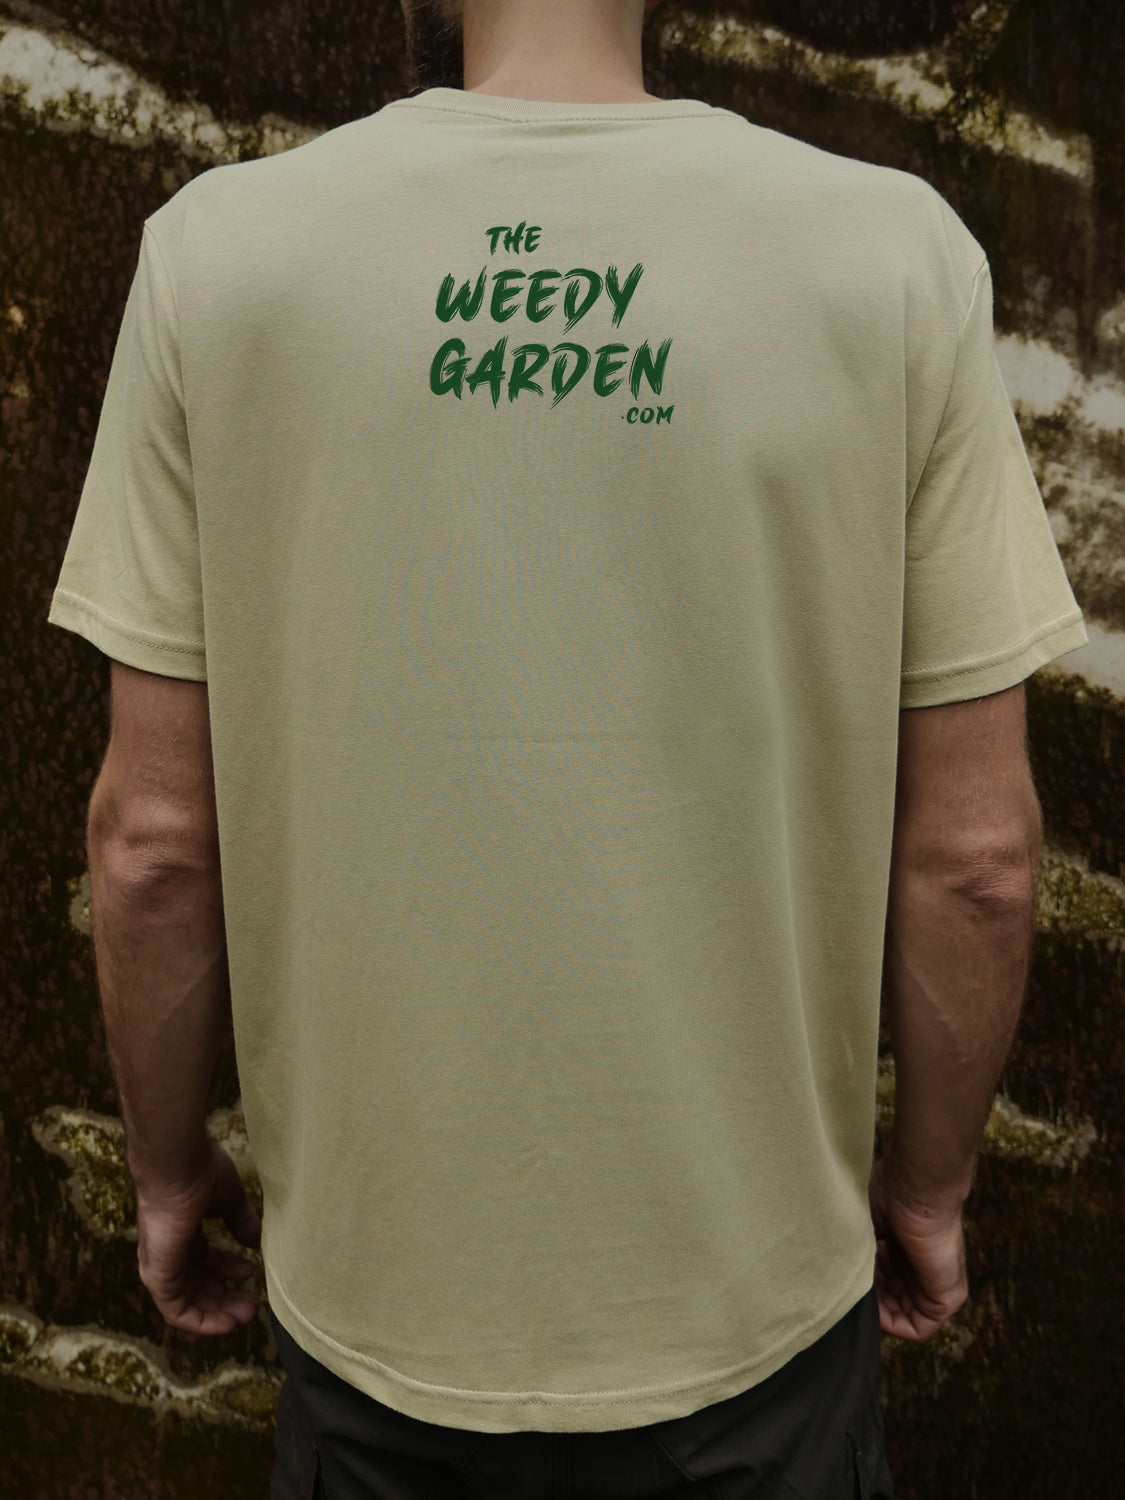 The Weedy Garden